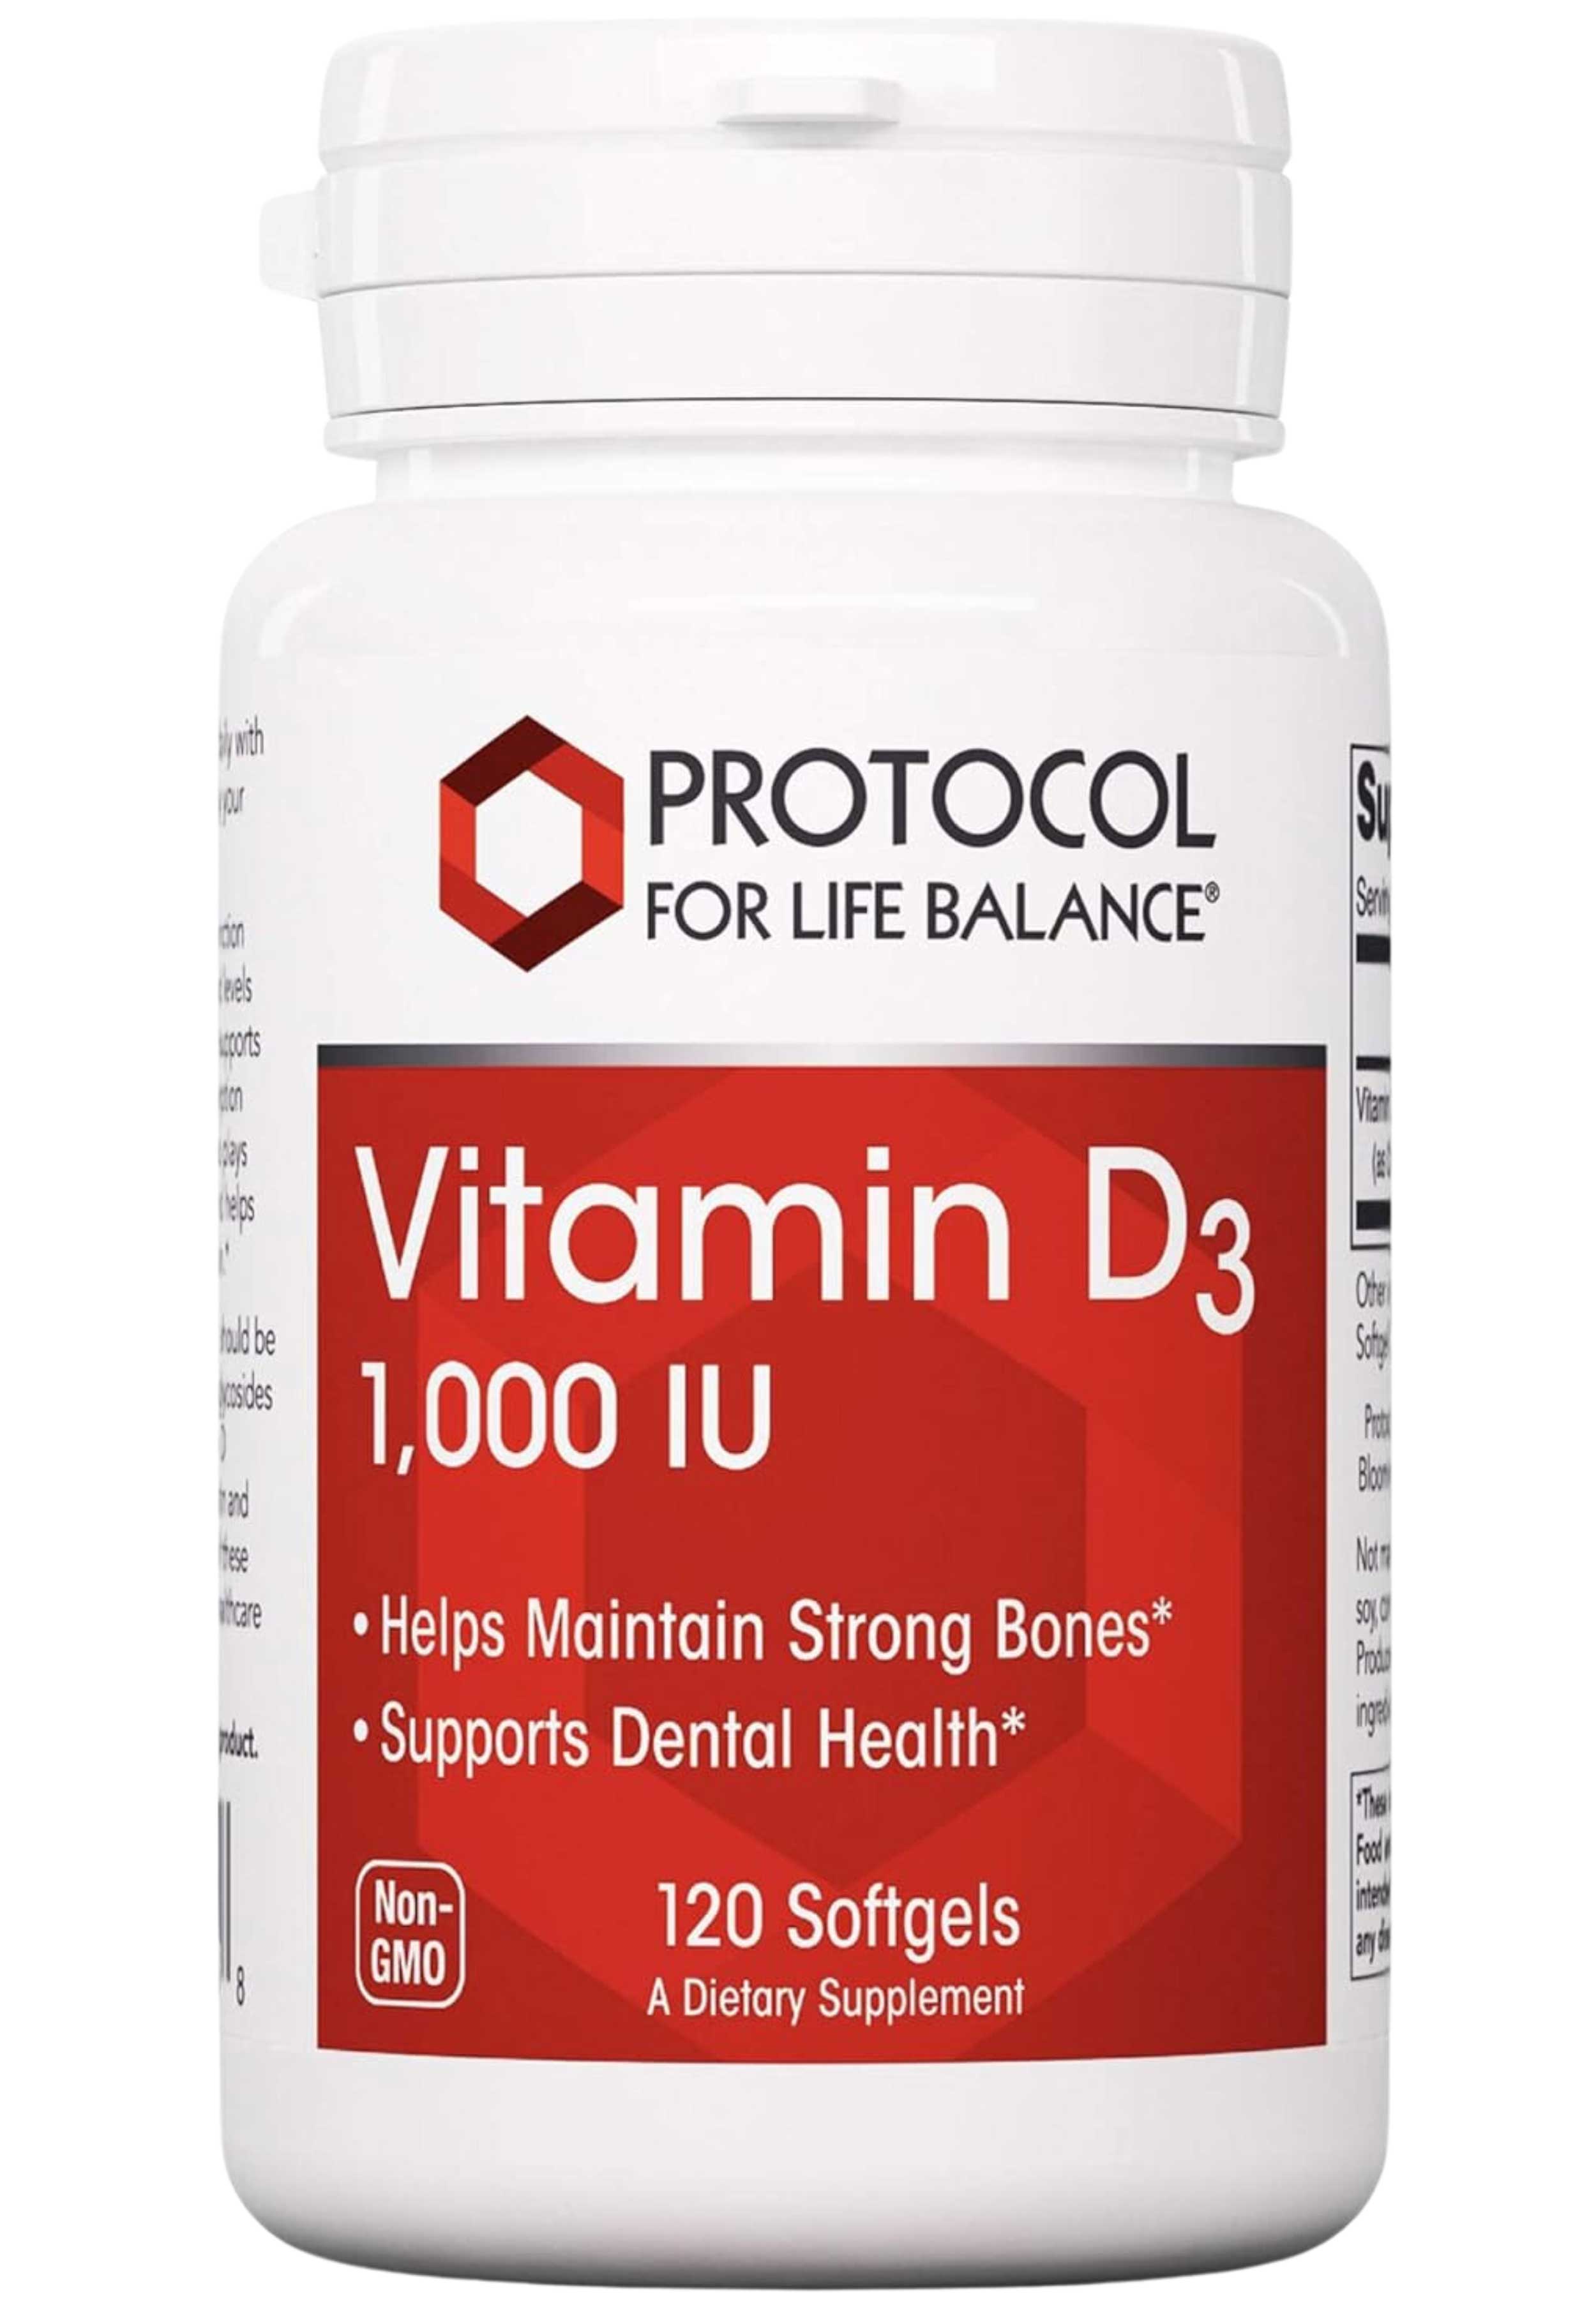 Protocol For Life Balance Vitamin D3 1,000 IU